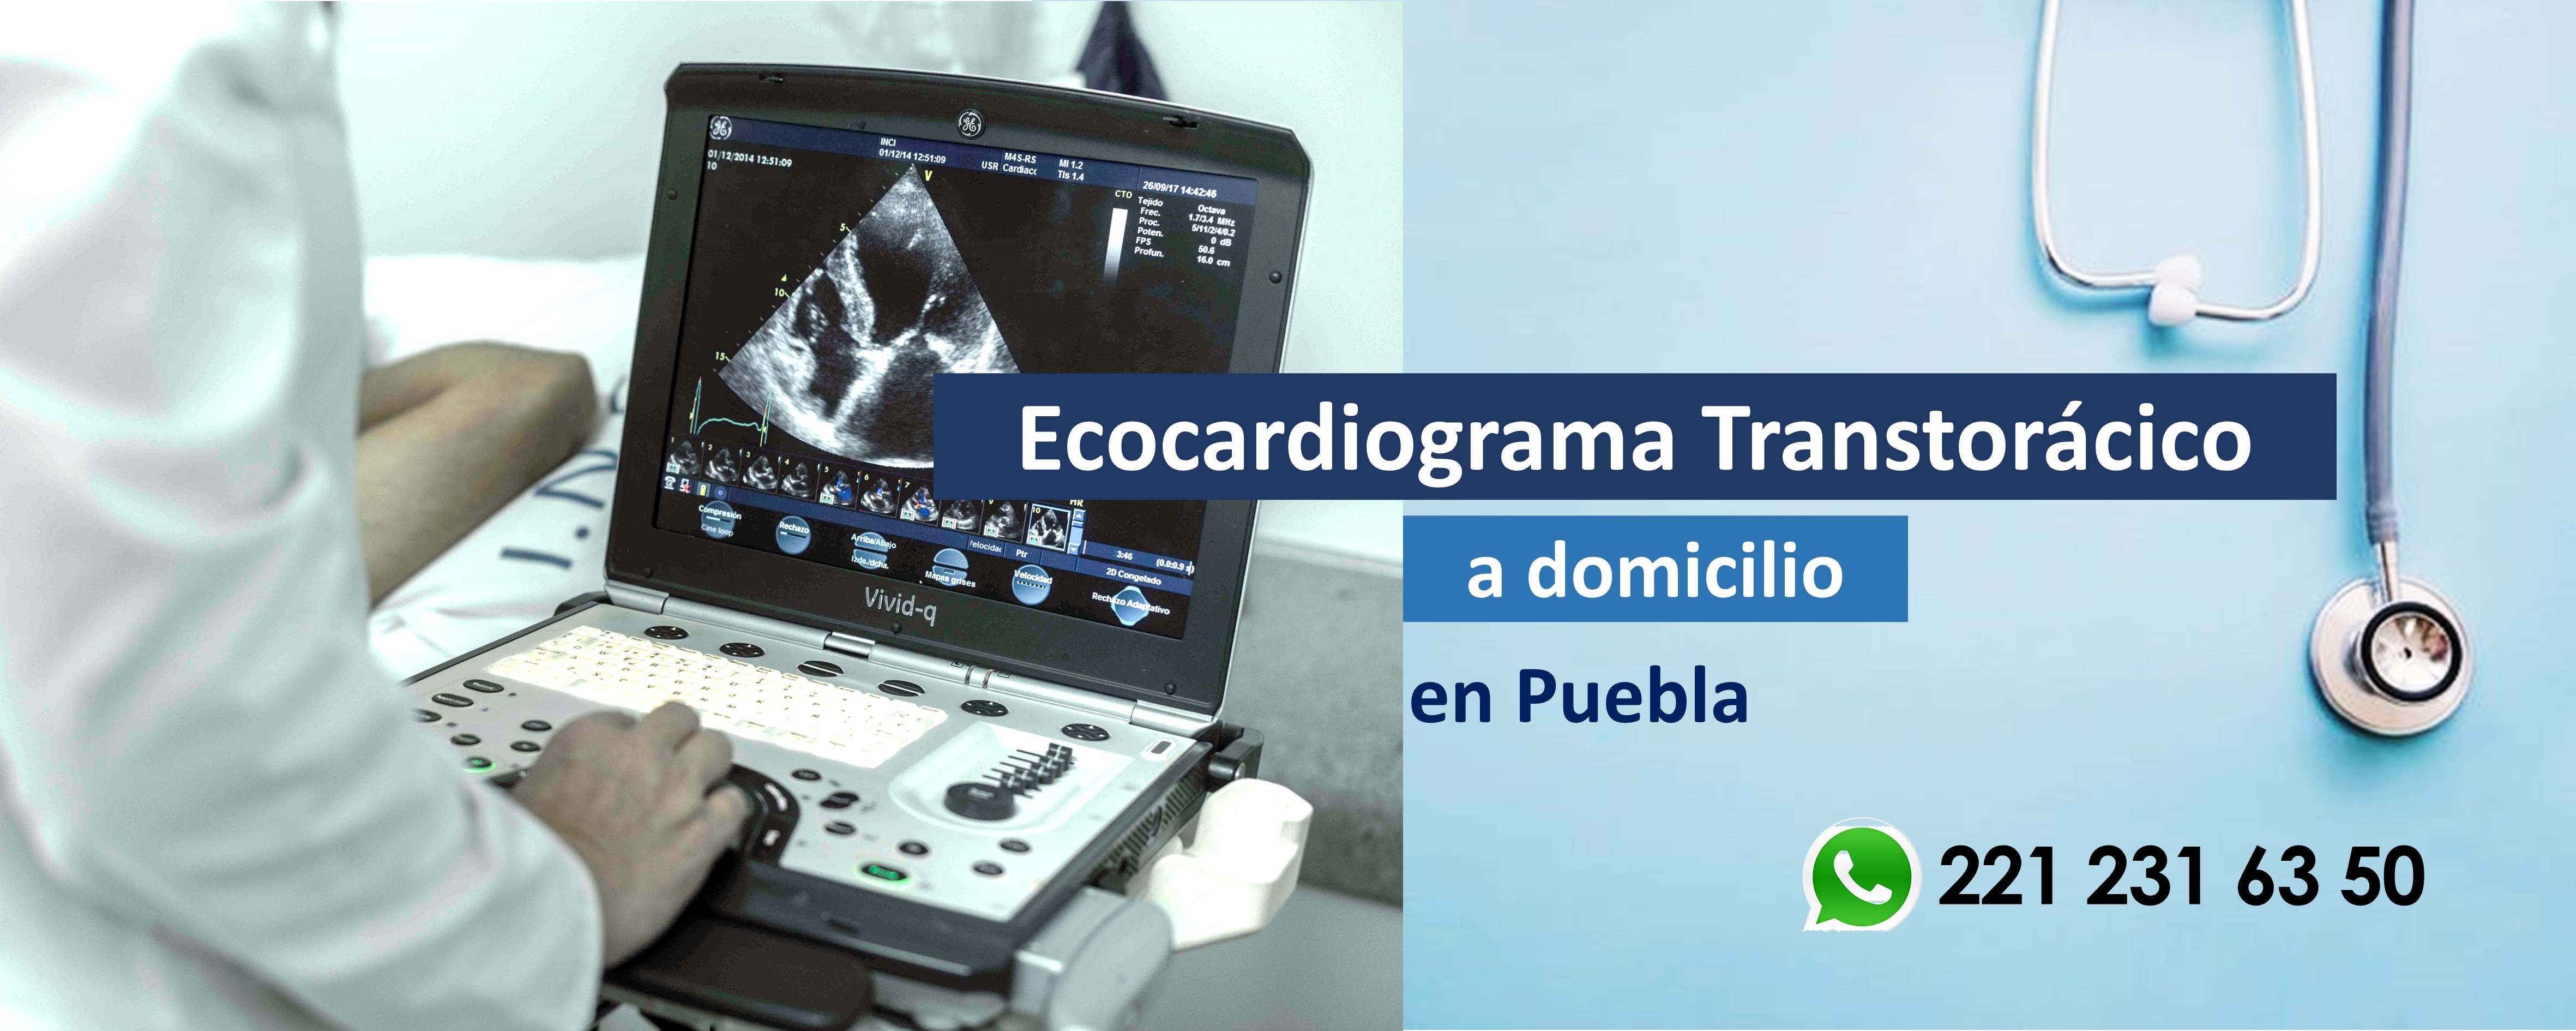 Cardiólogo en Puebla